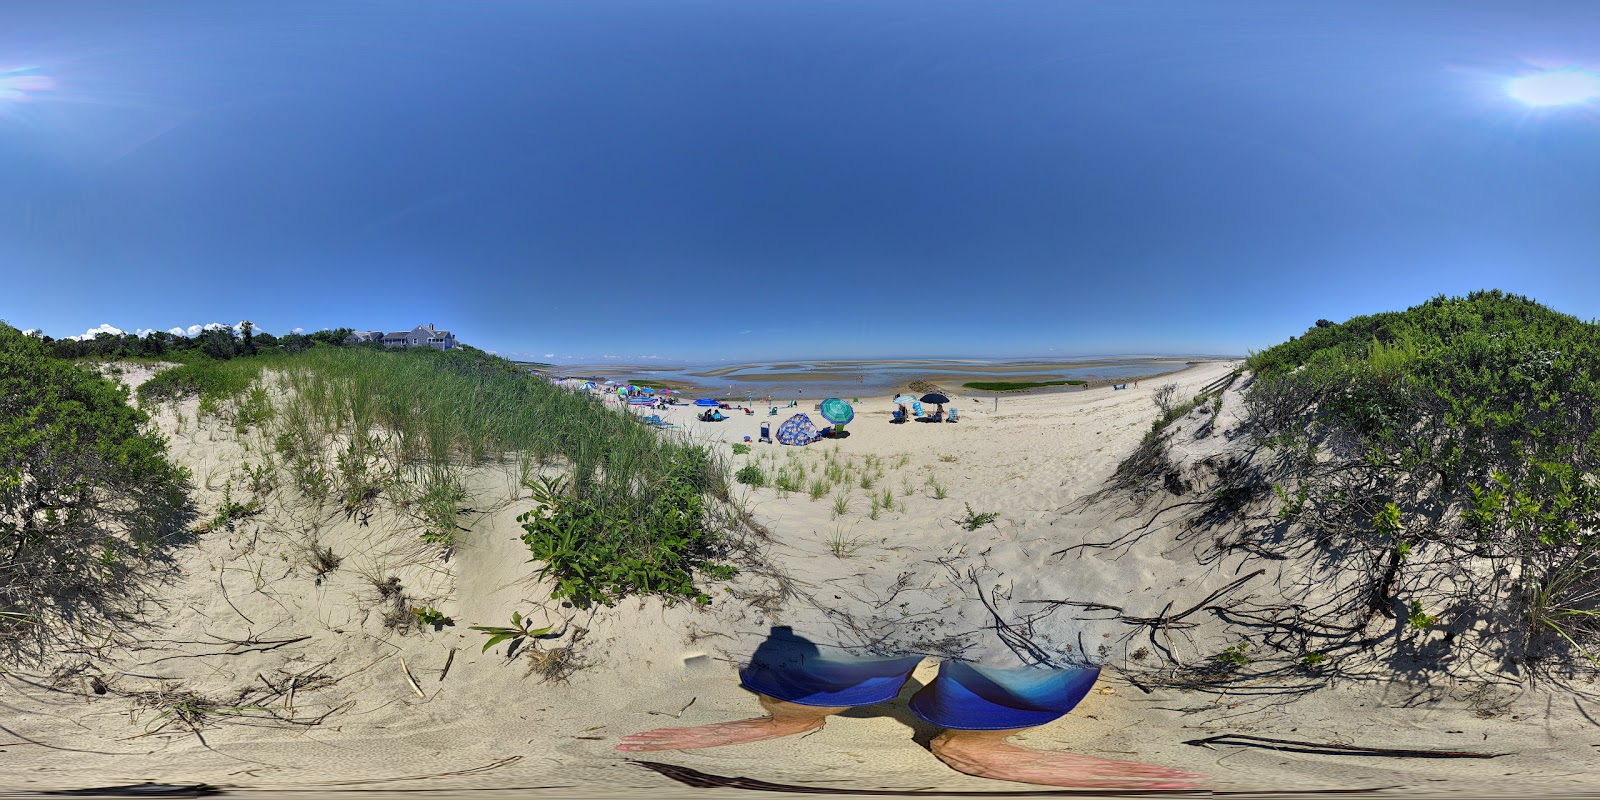 Zdjęcie Mant's Landing beach z poziomem czystości wysoki